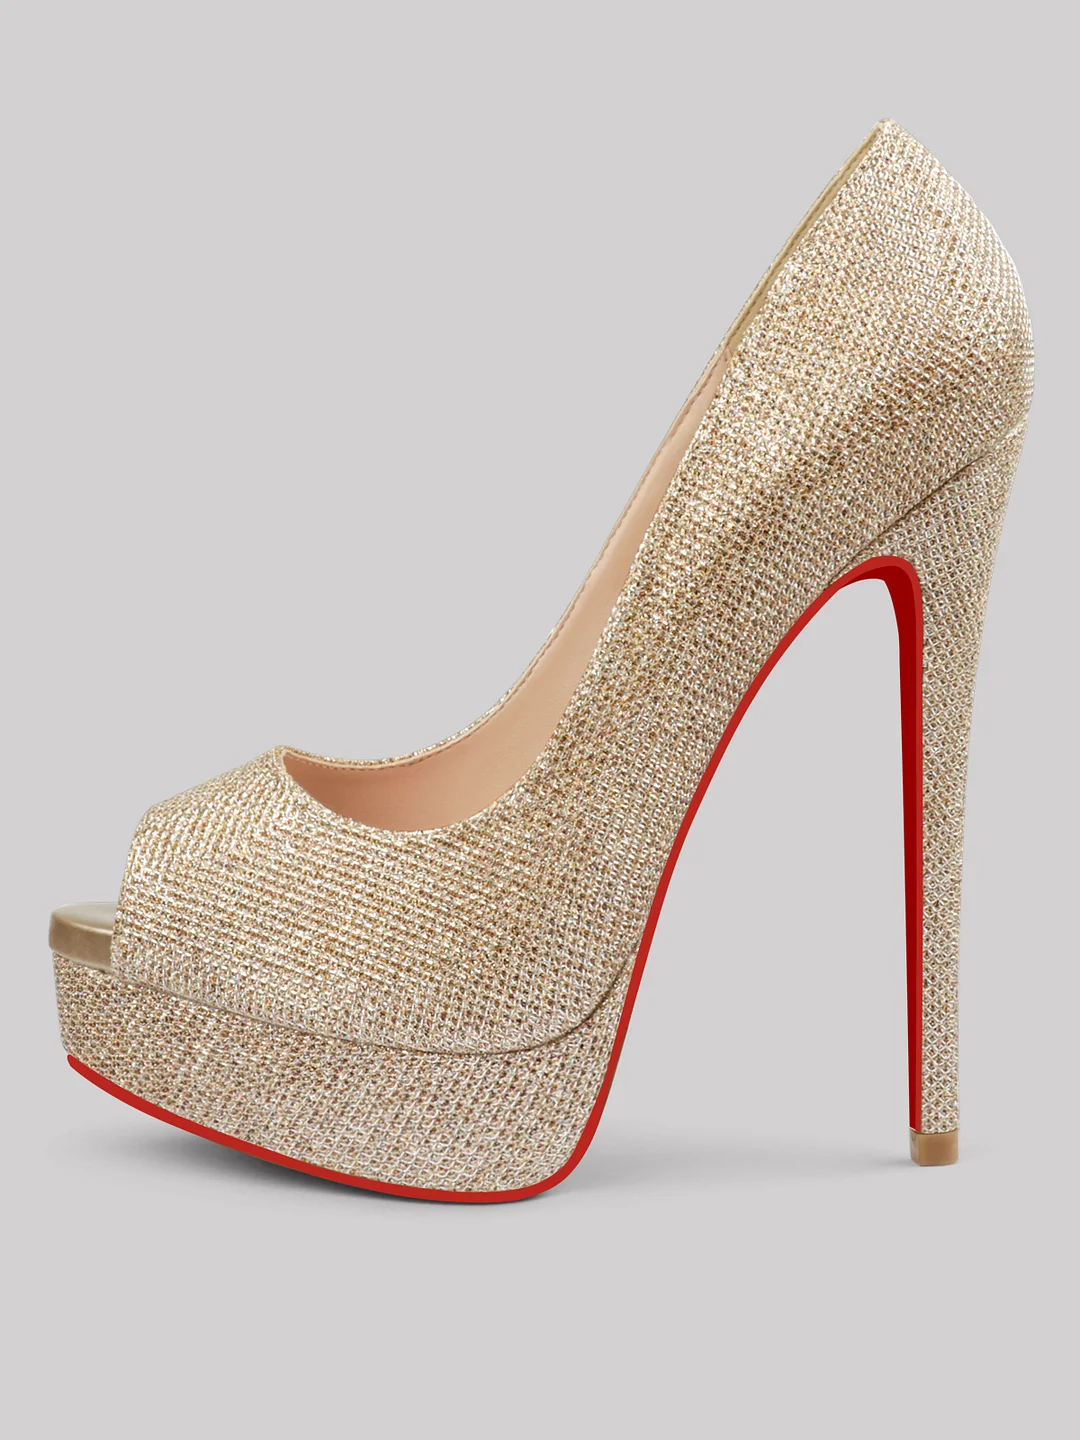 150mm Women's Super High Heels Peep Toe Platform Pumps Red Bottoms Stilettos Glitter Shoes